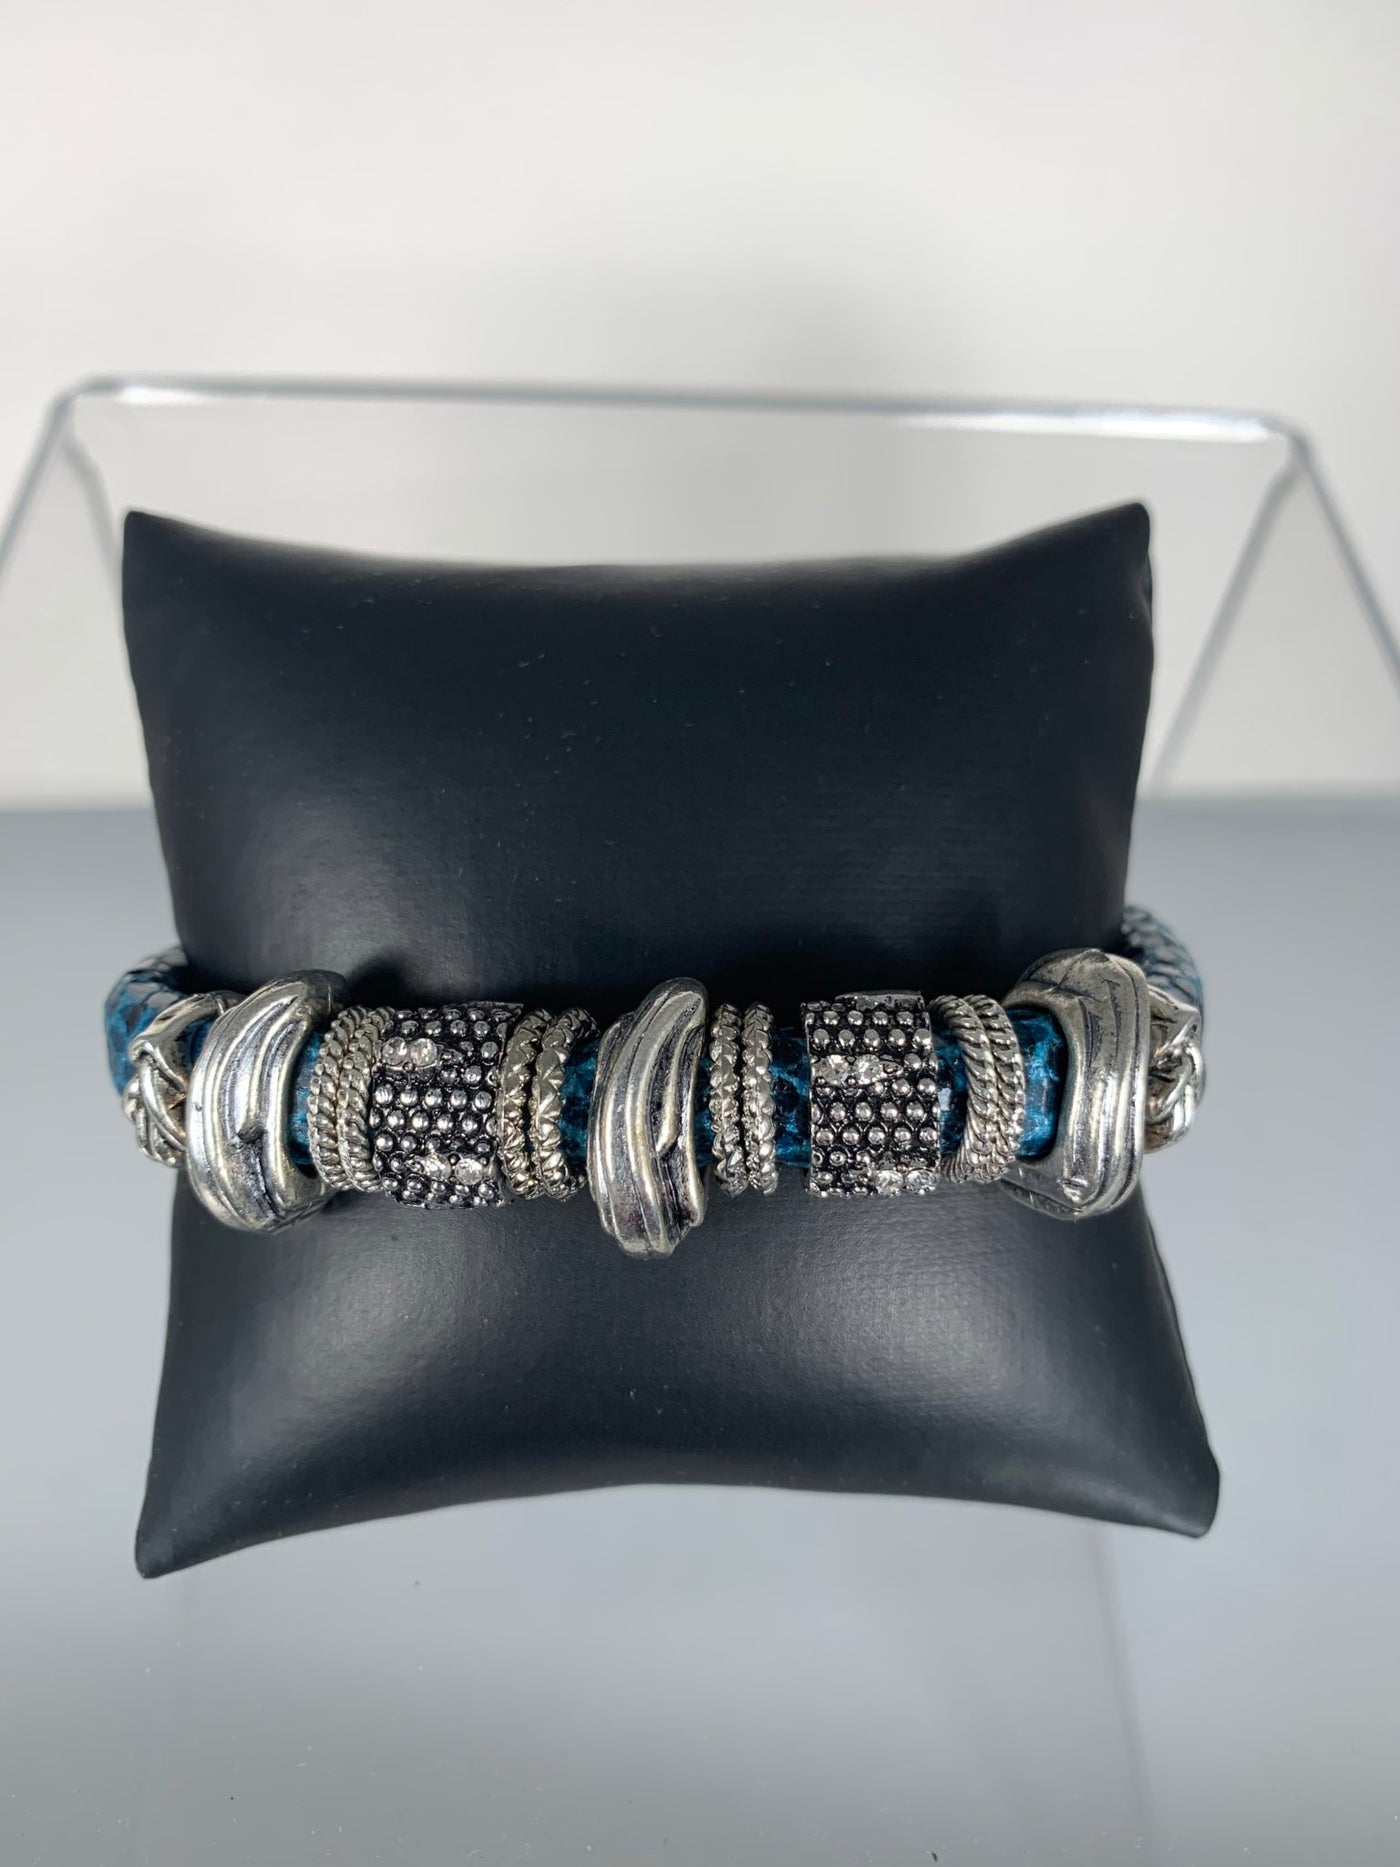 Blue Faux Snake Skin Band Bracelet with SPARKS